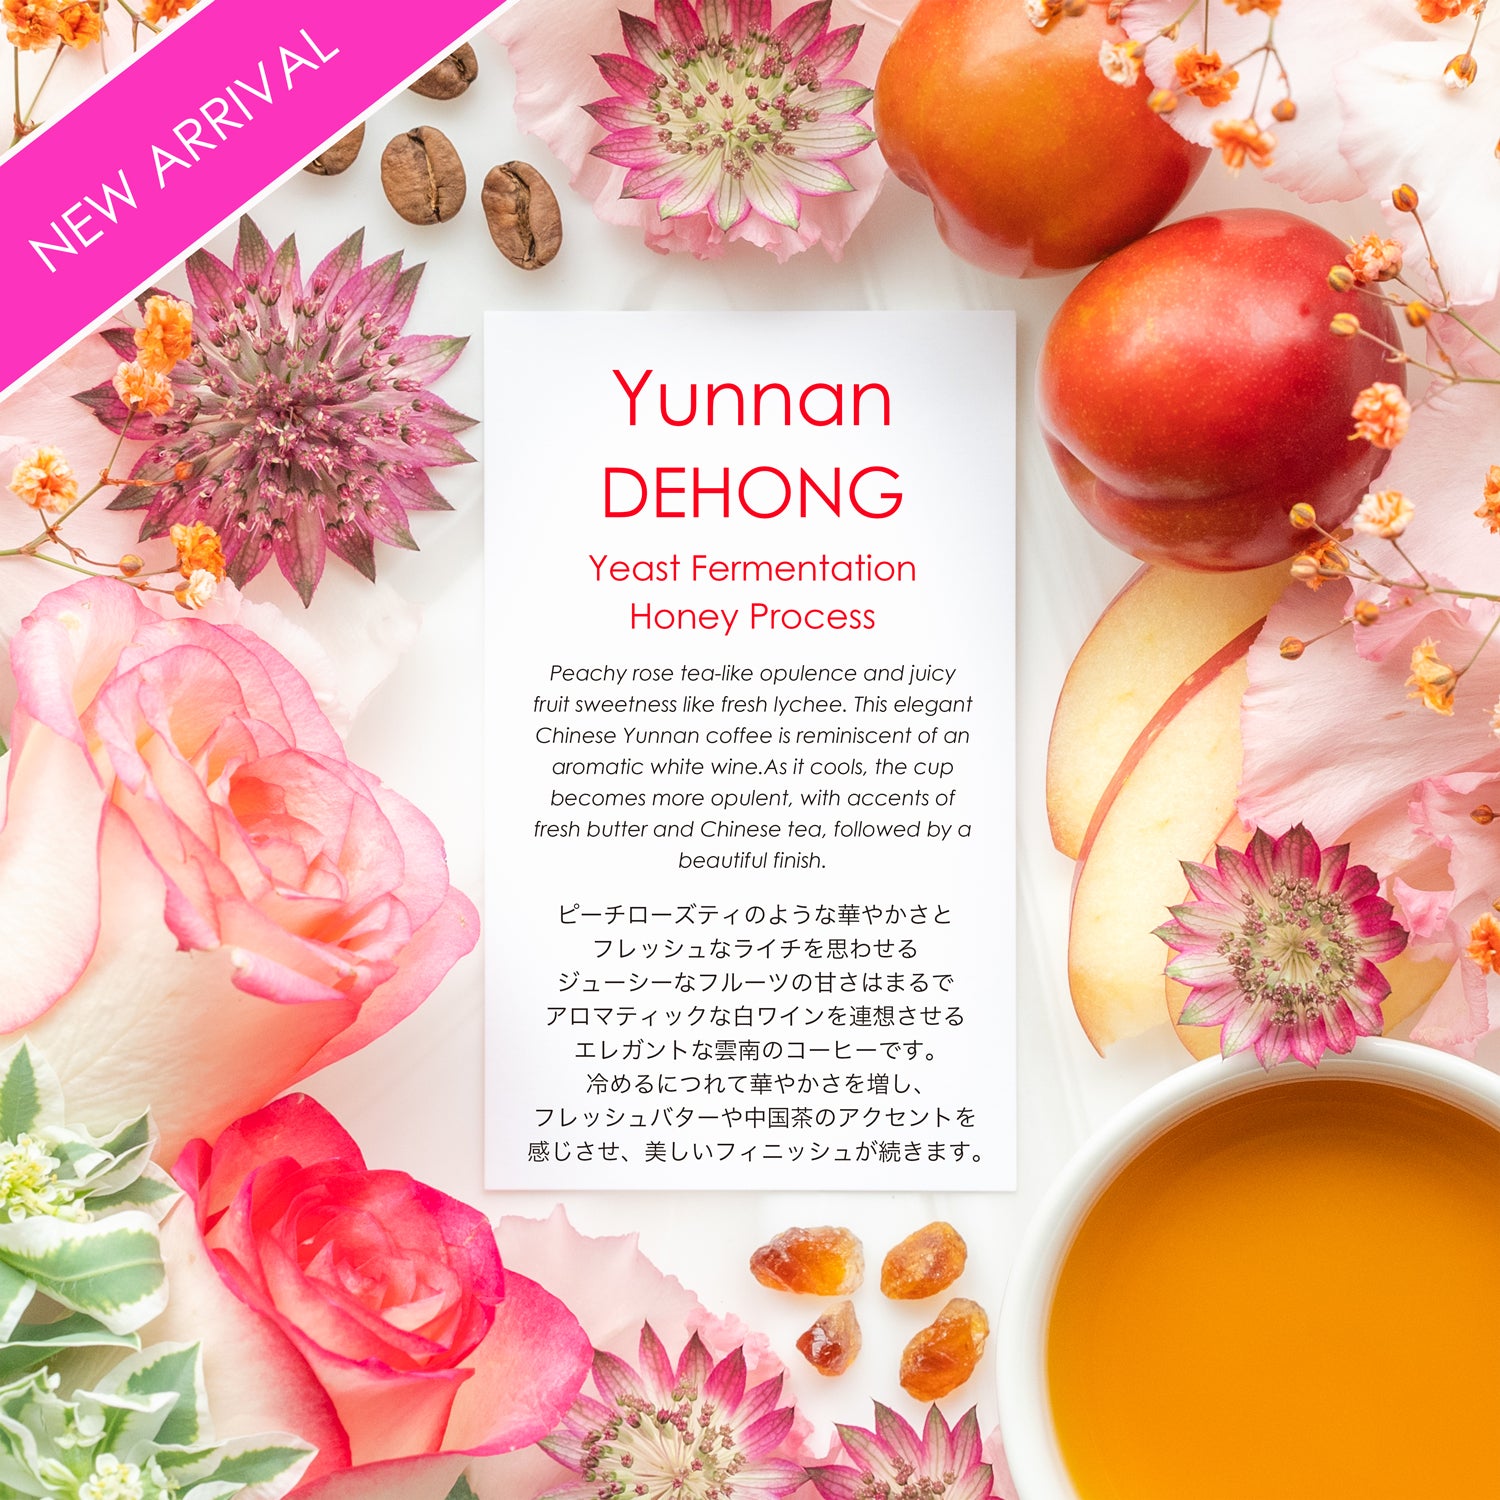 DEHONG Yeast Fermentation Honey Process [Peachy rose tea-like]